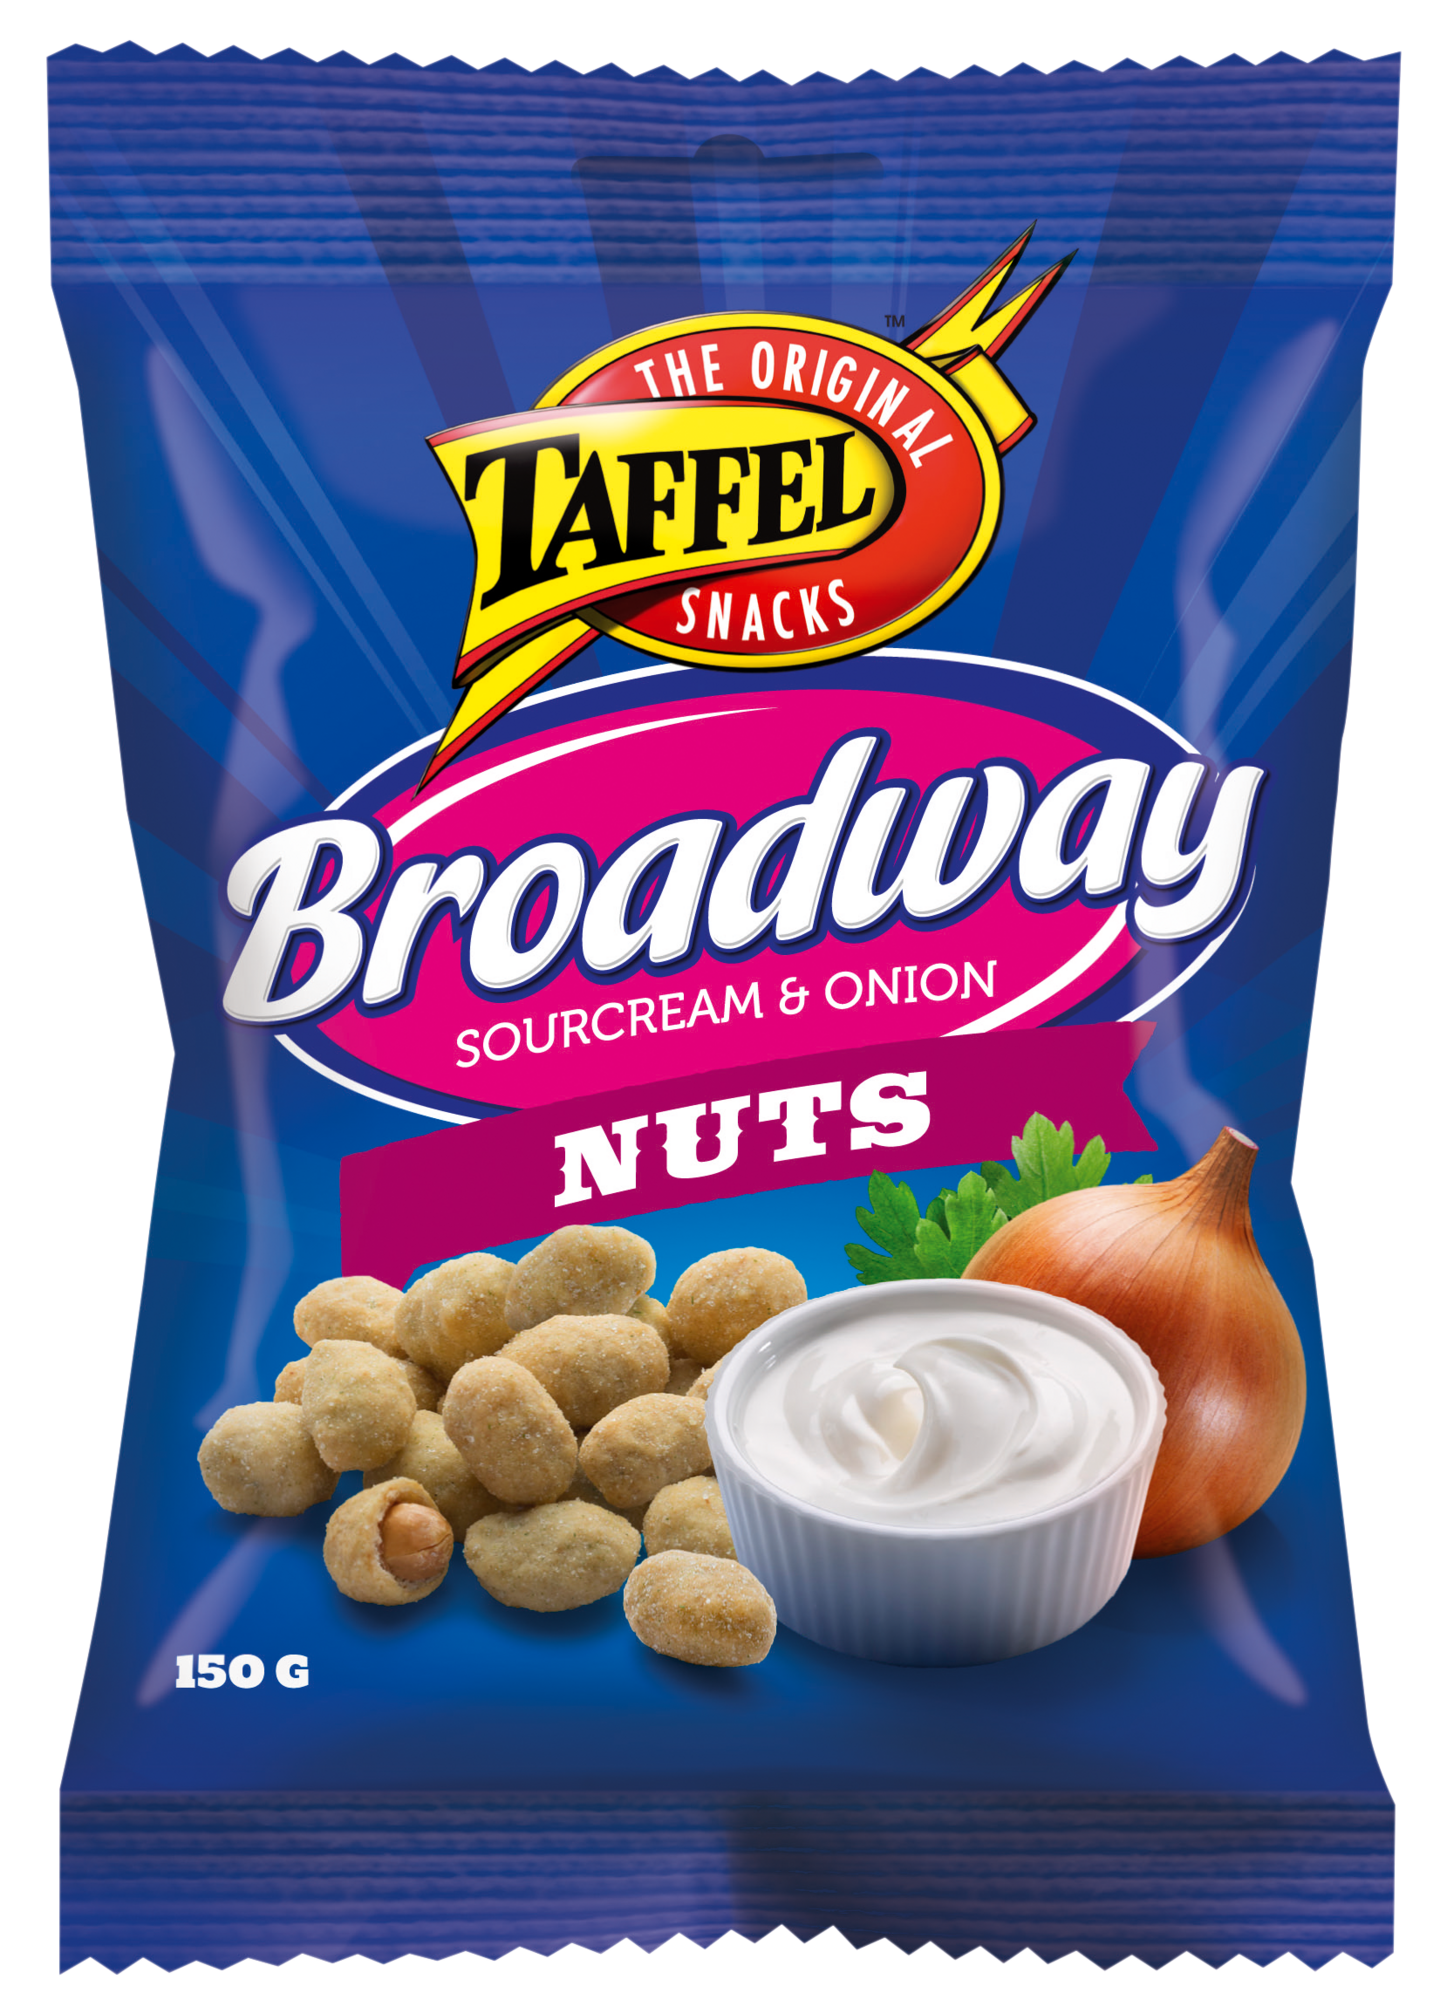 Taffel pähkinä Broadway Nuts 150g